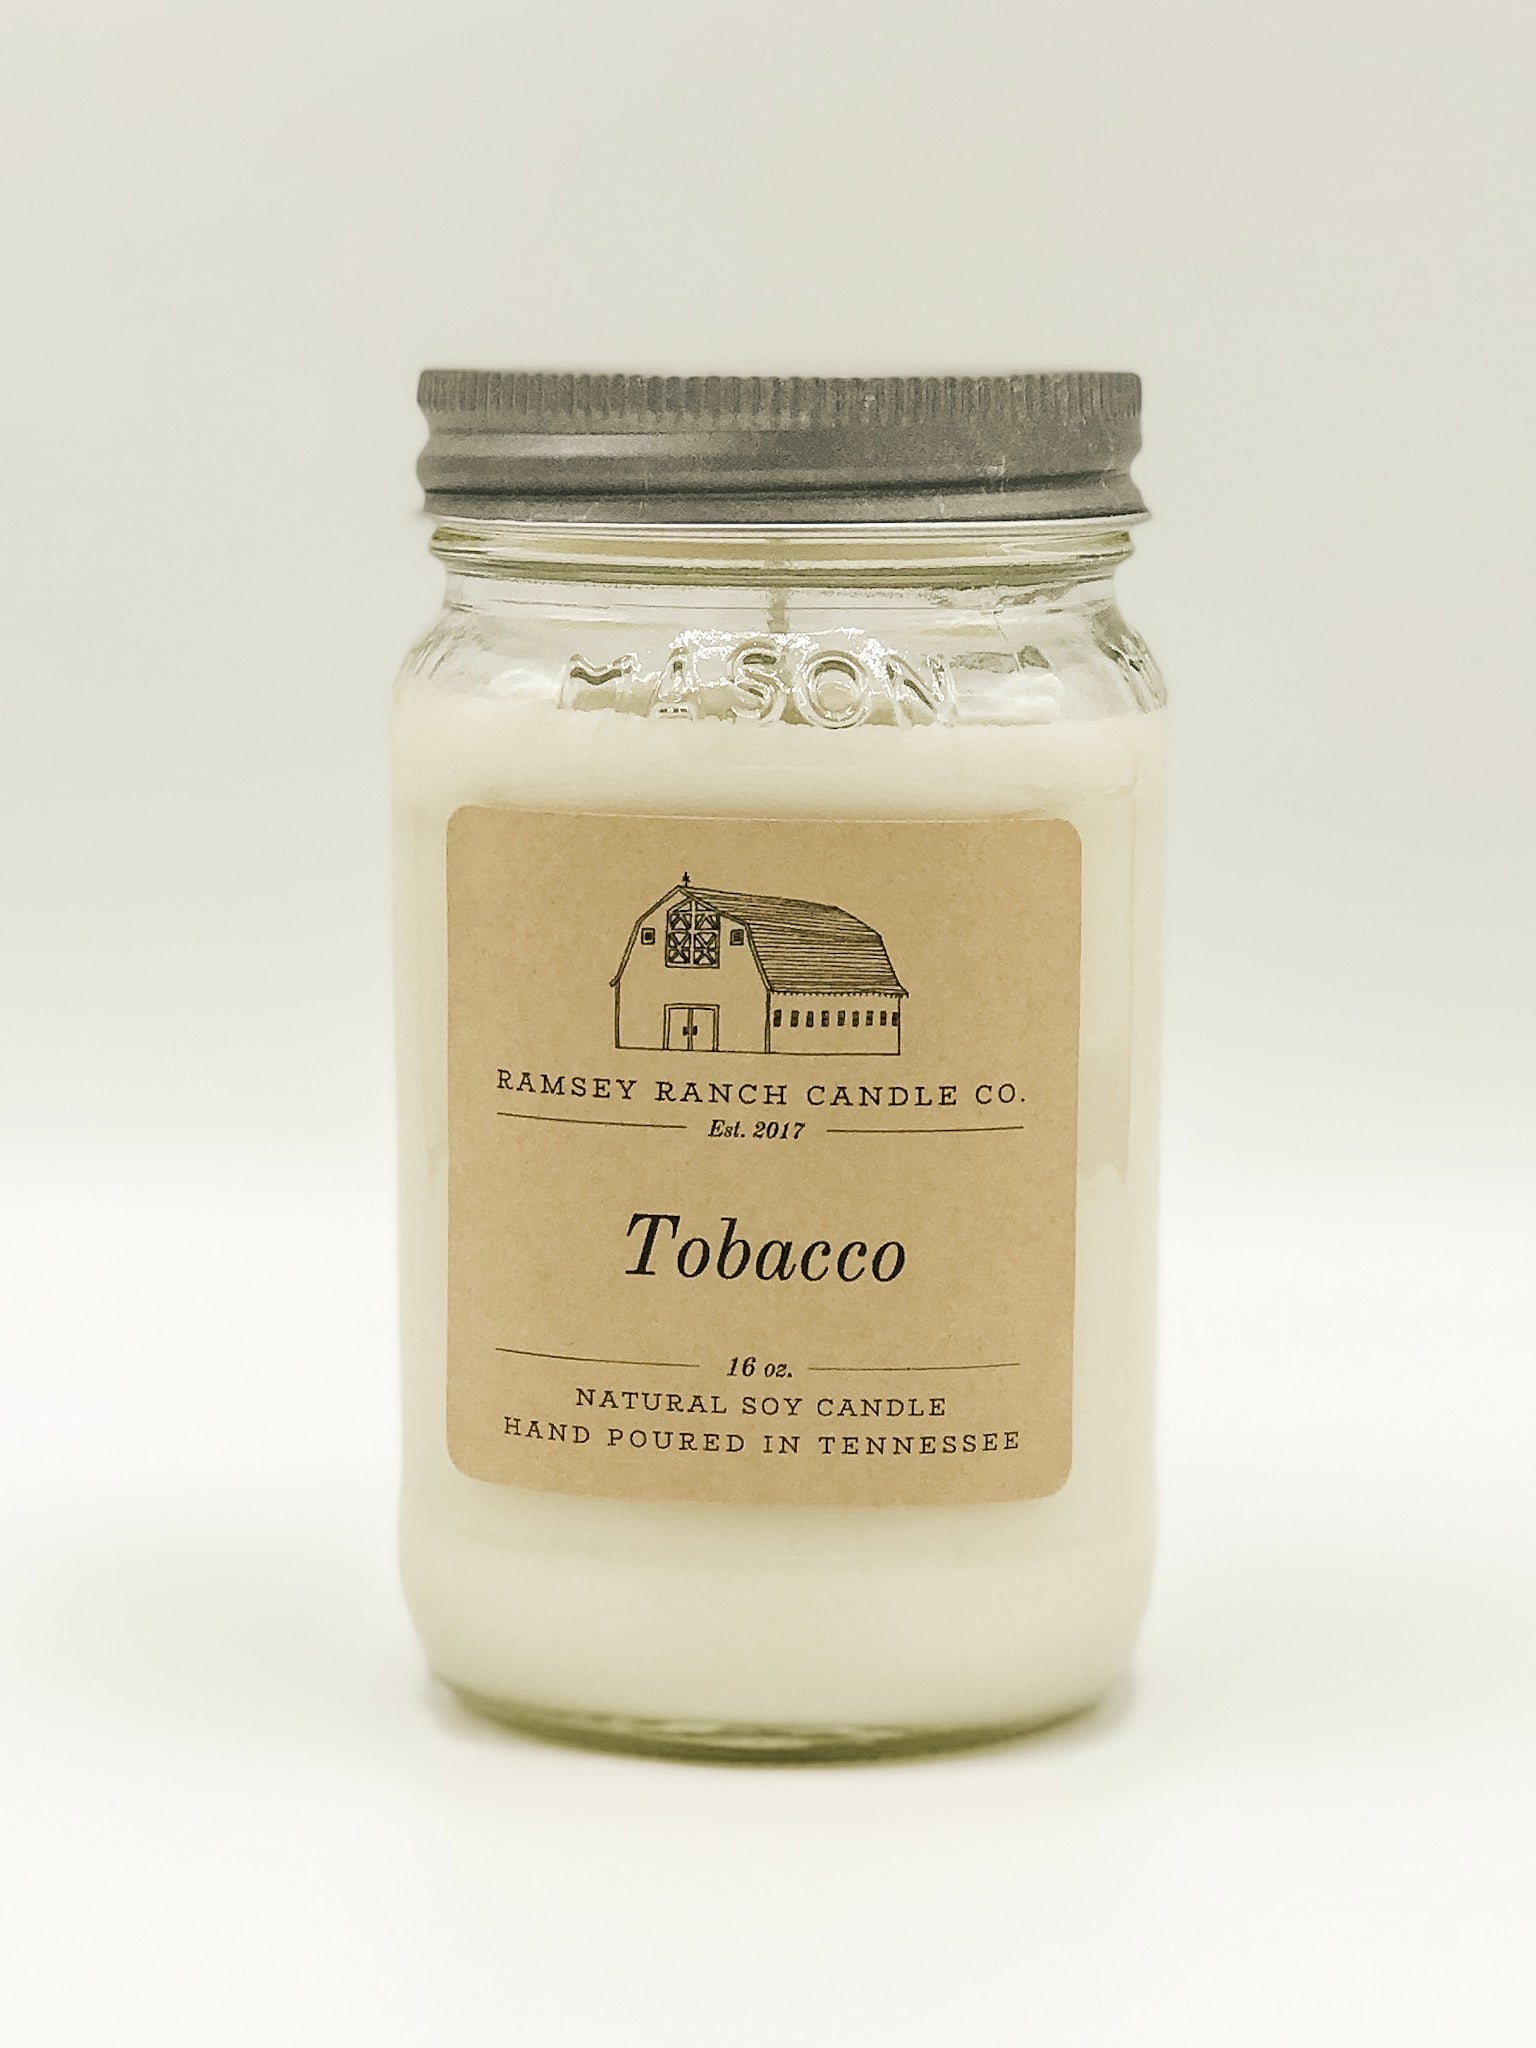 Tobacco 16 oz Mason Jar